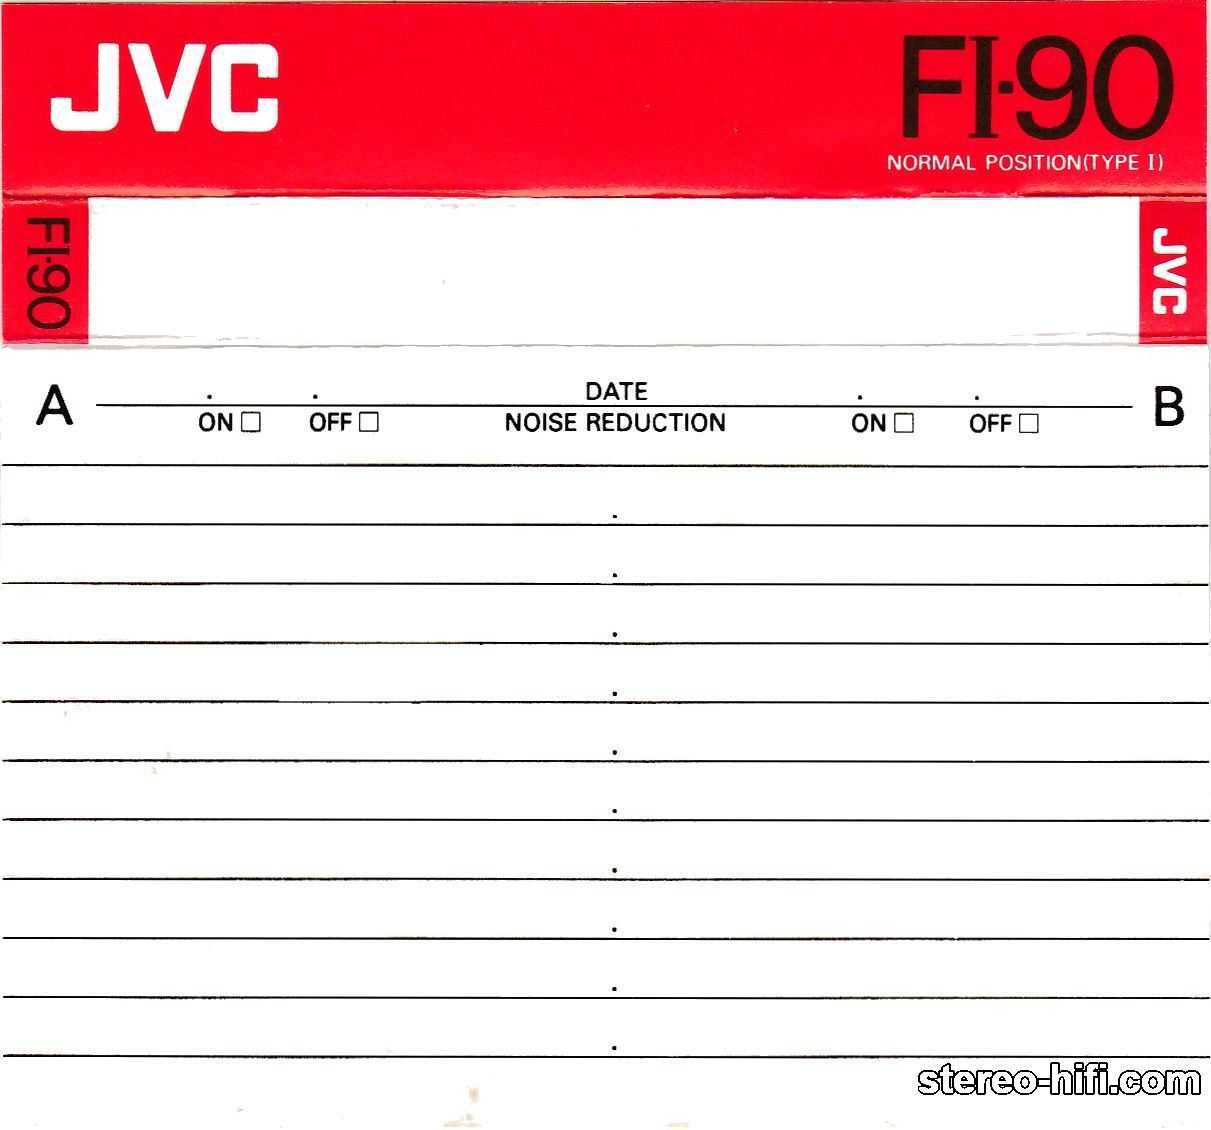 JVC FI C90 1988